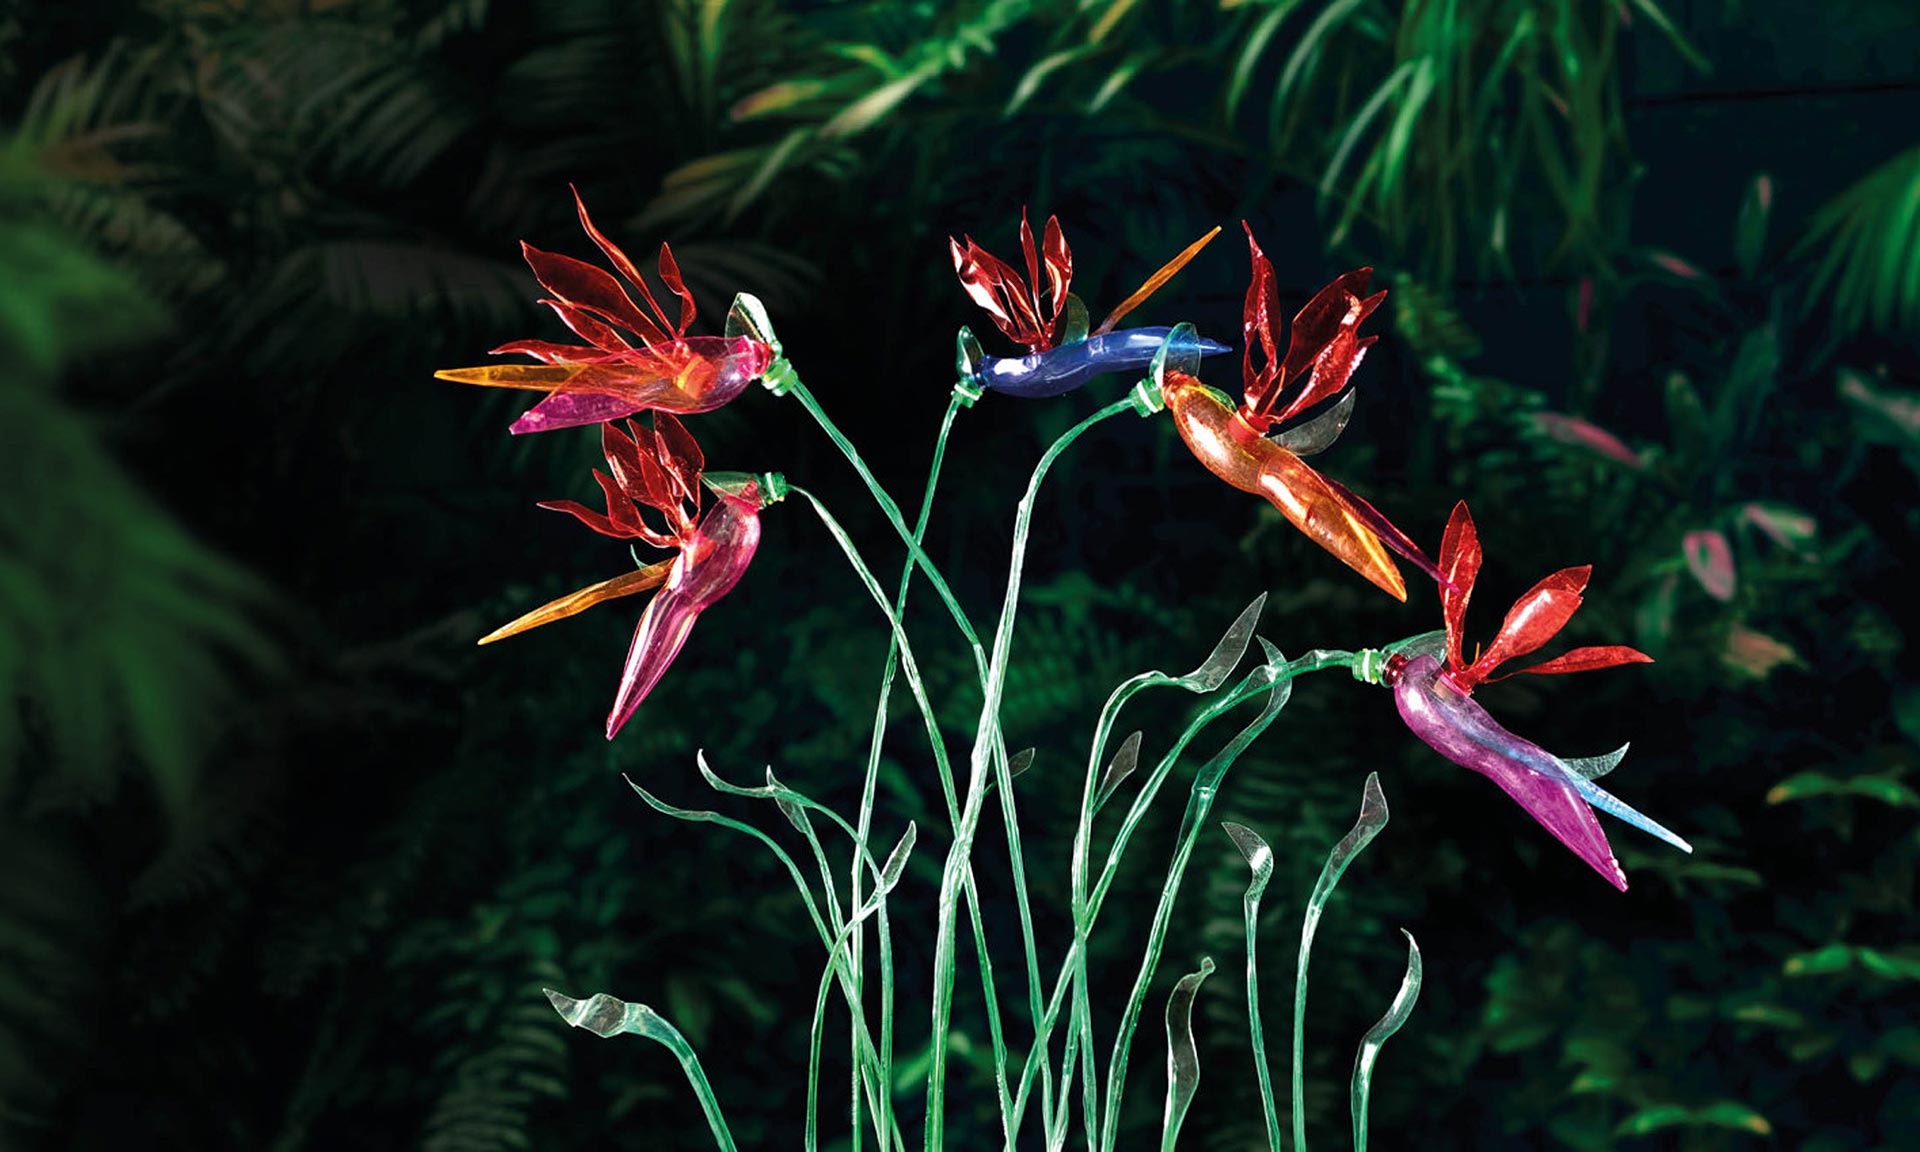 Botanická zahrada vystavuje na 130 tropických rostlin a zvířat vyrobených z PET láhví sochařkou Veronikou Richterovou